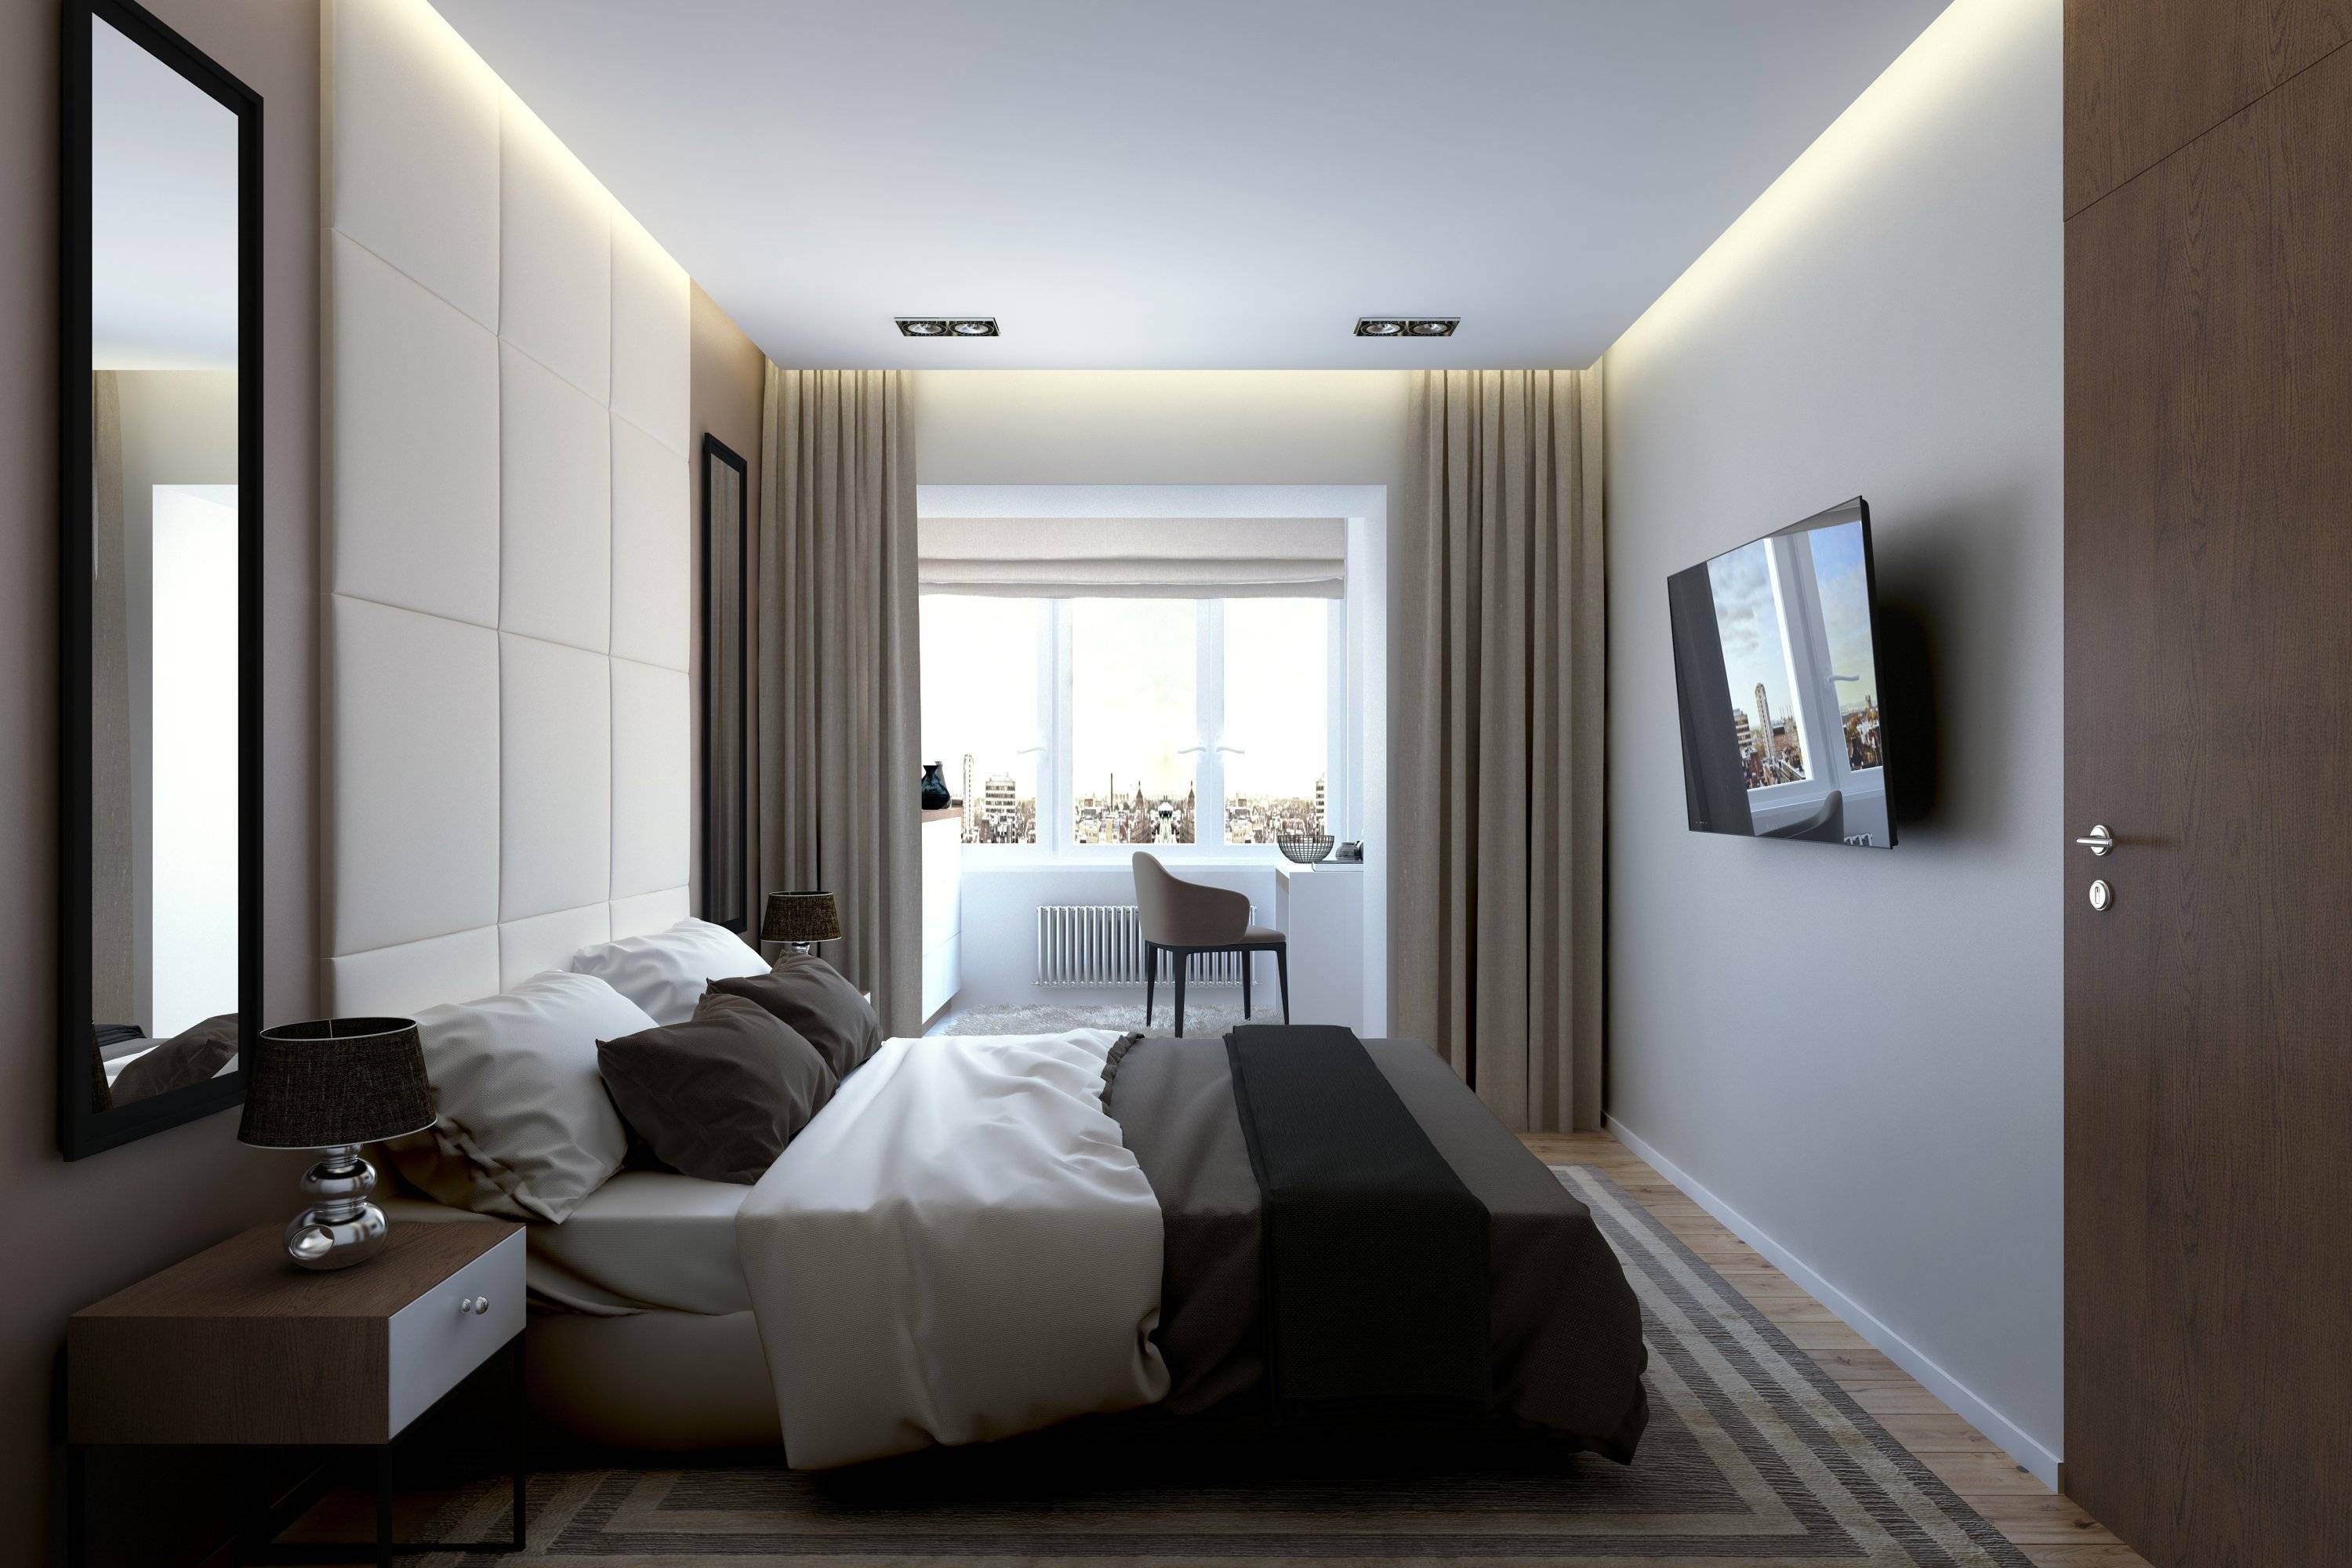 Оформляем небольшую комнату: идеи и дизайн спальни 15 кв. м.